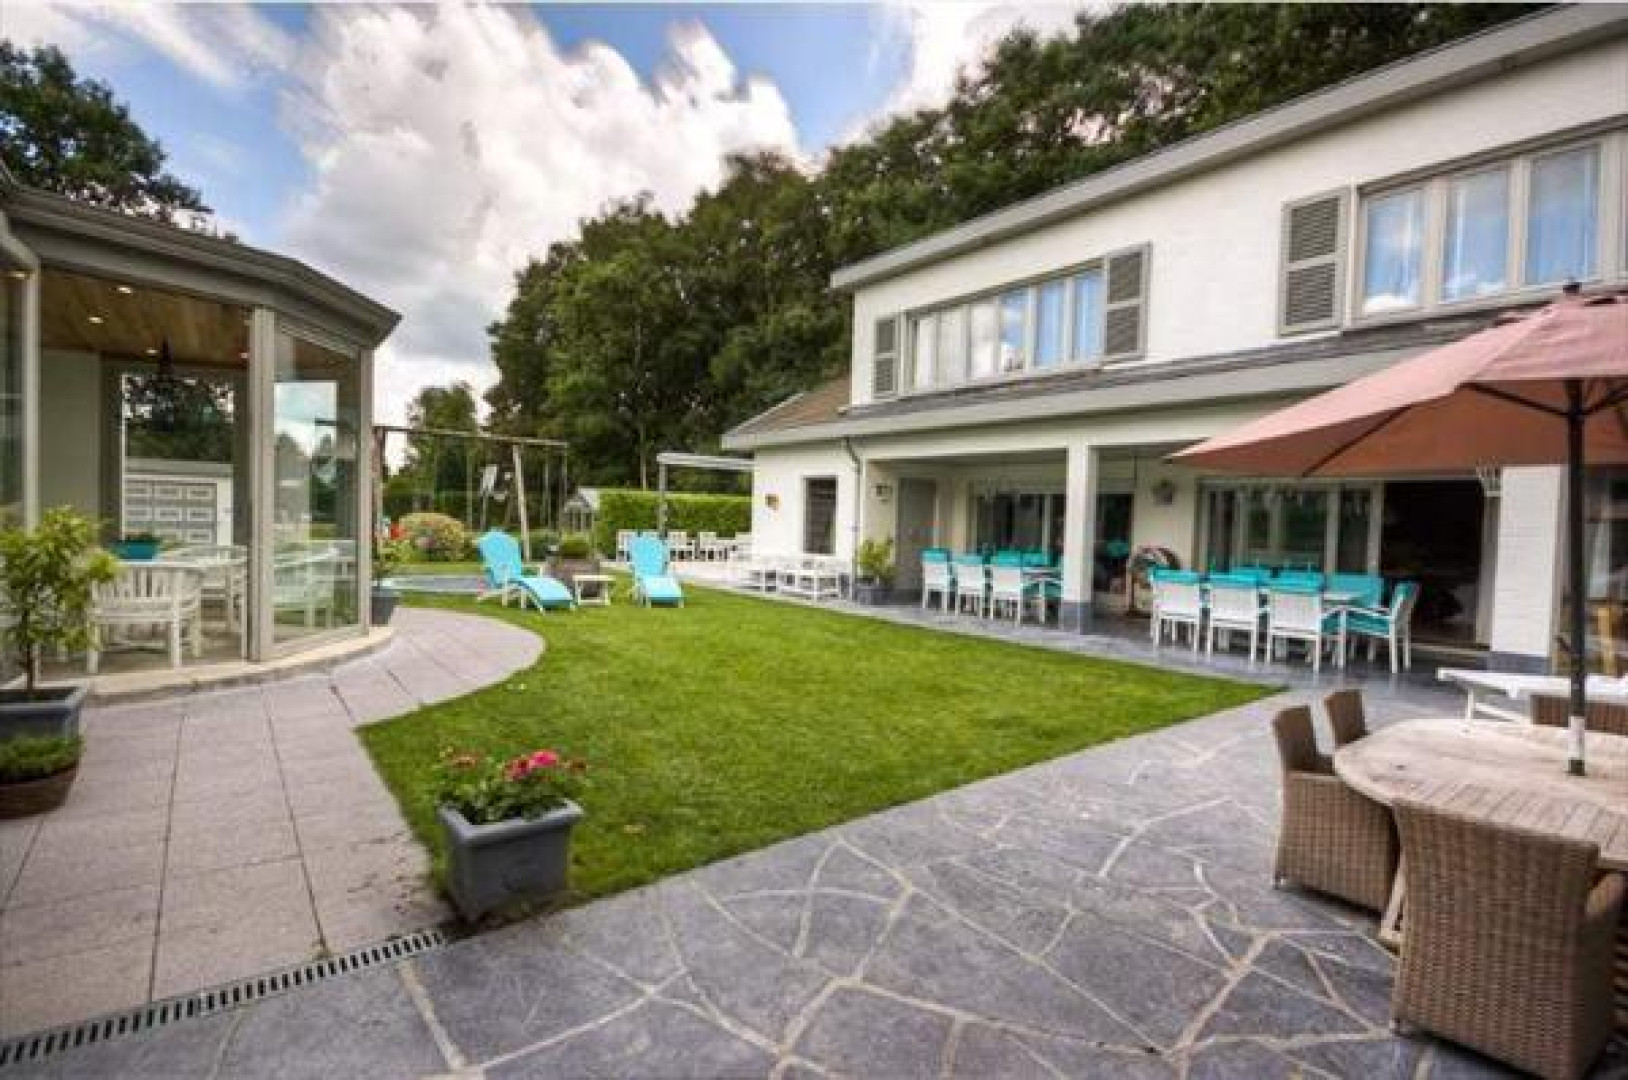 Villa van de Pfaffs na rechtszaak voor miljoen euro minder weer terug in de verkoop. Zie foto's